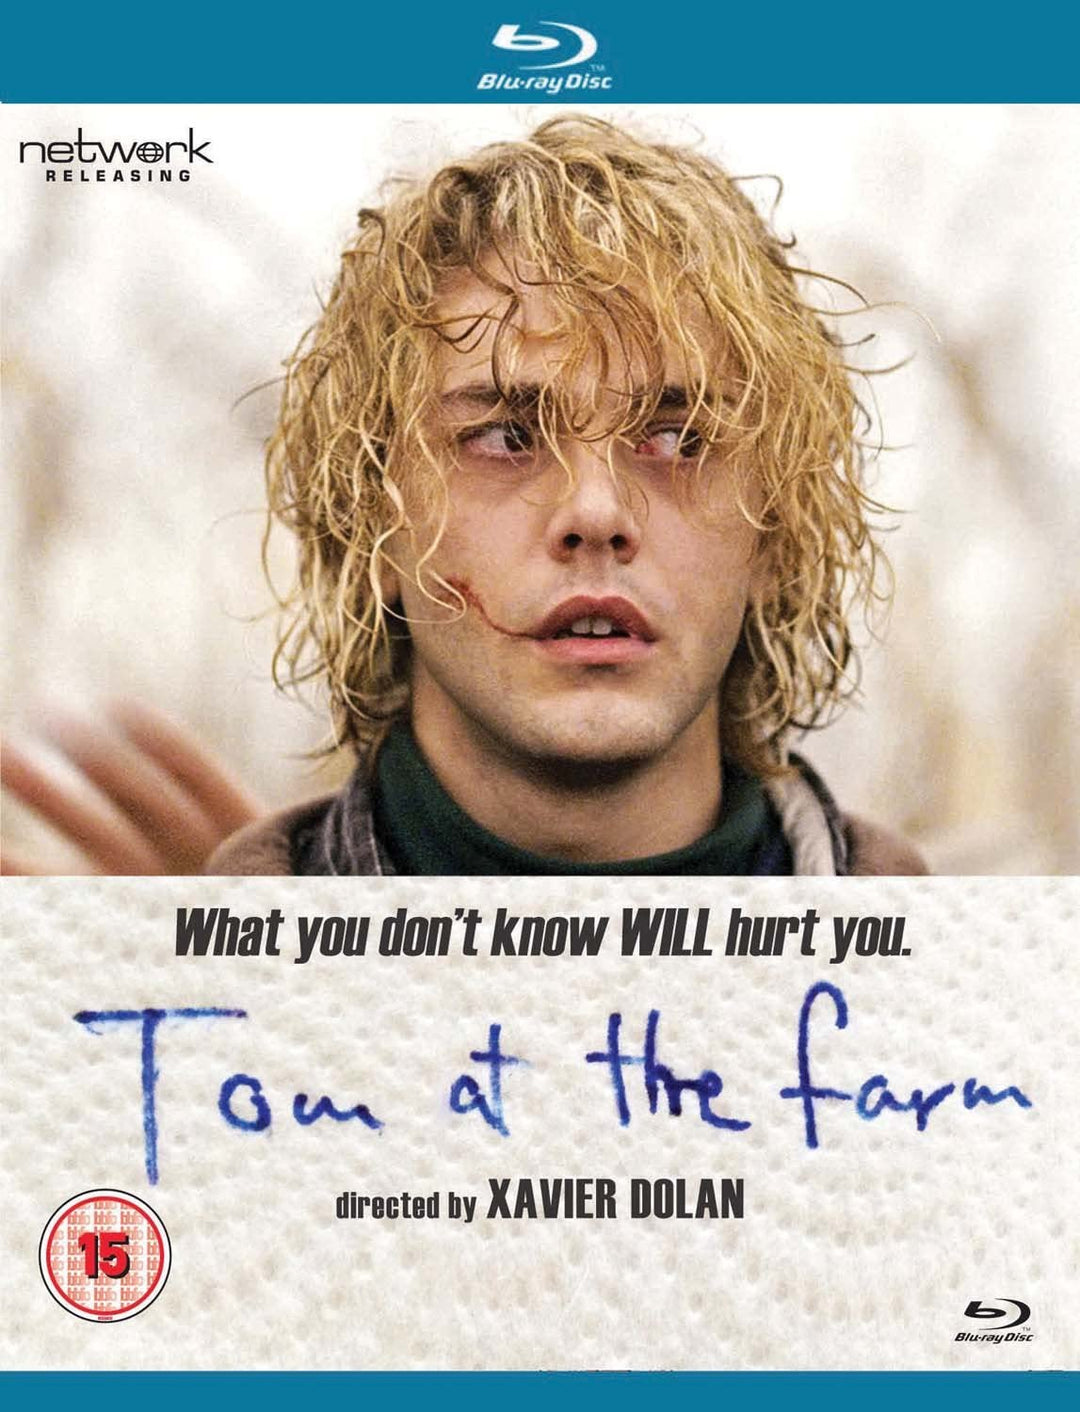 Tom at the Farm [Region Free] - Drama/Thriller [Blu-ray]